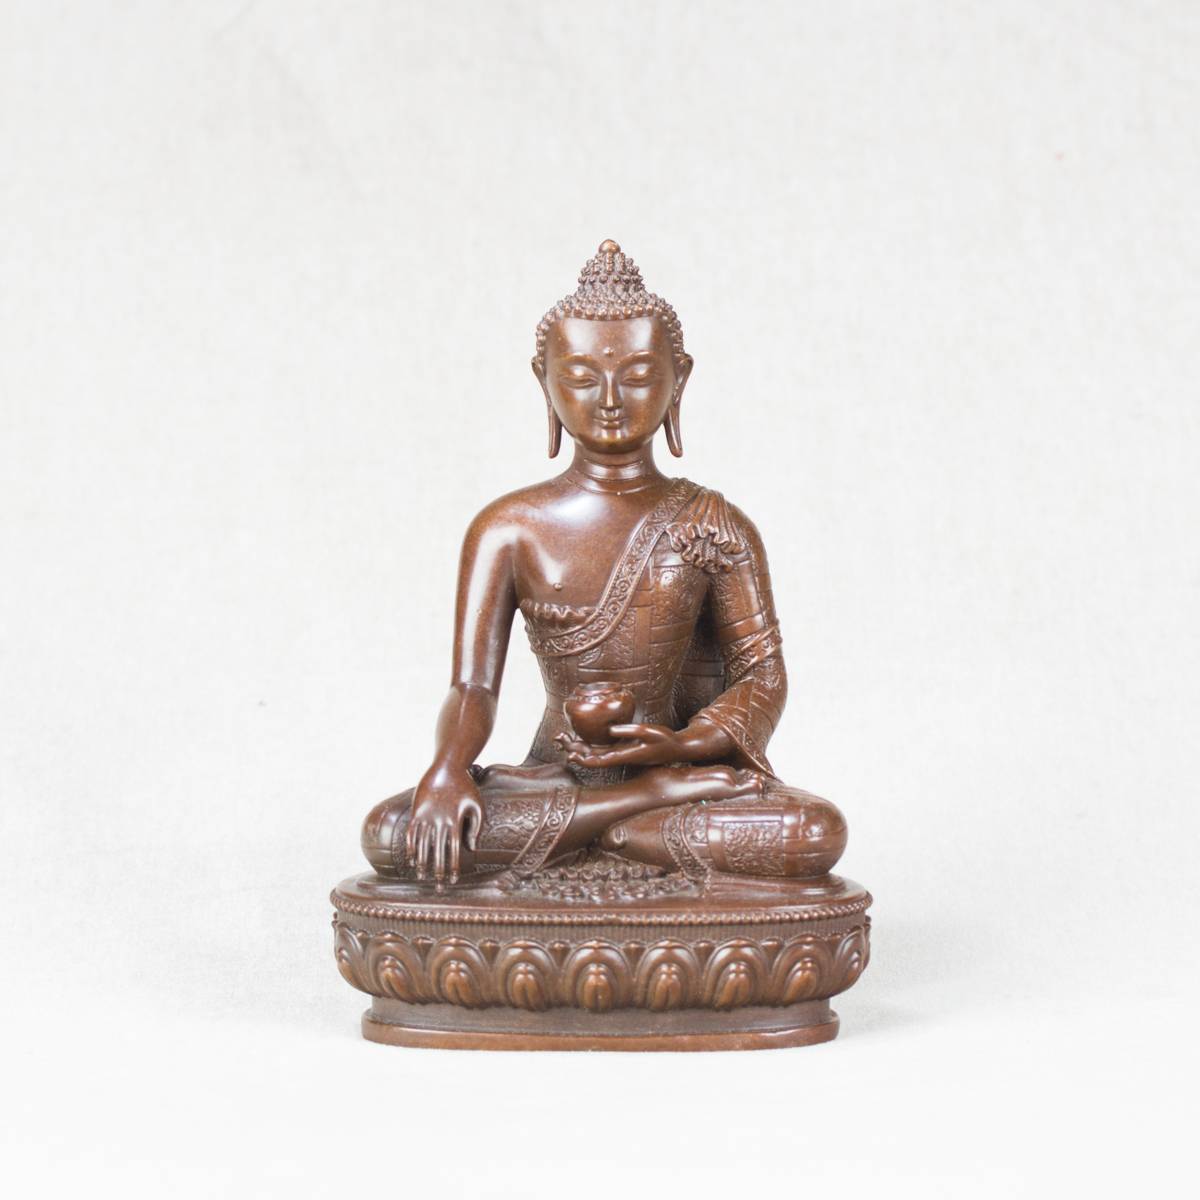 Буддийские мудры - что означают и как правильно их выполнять?